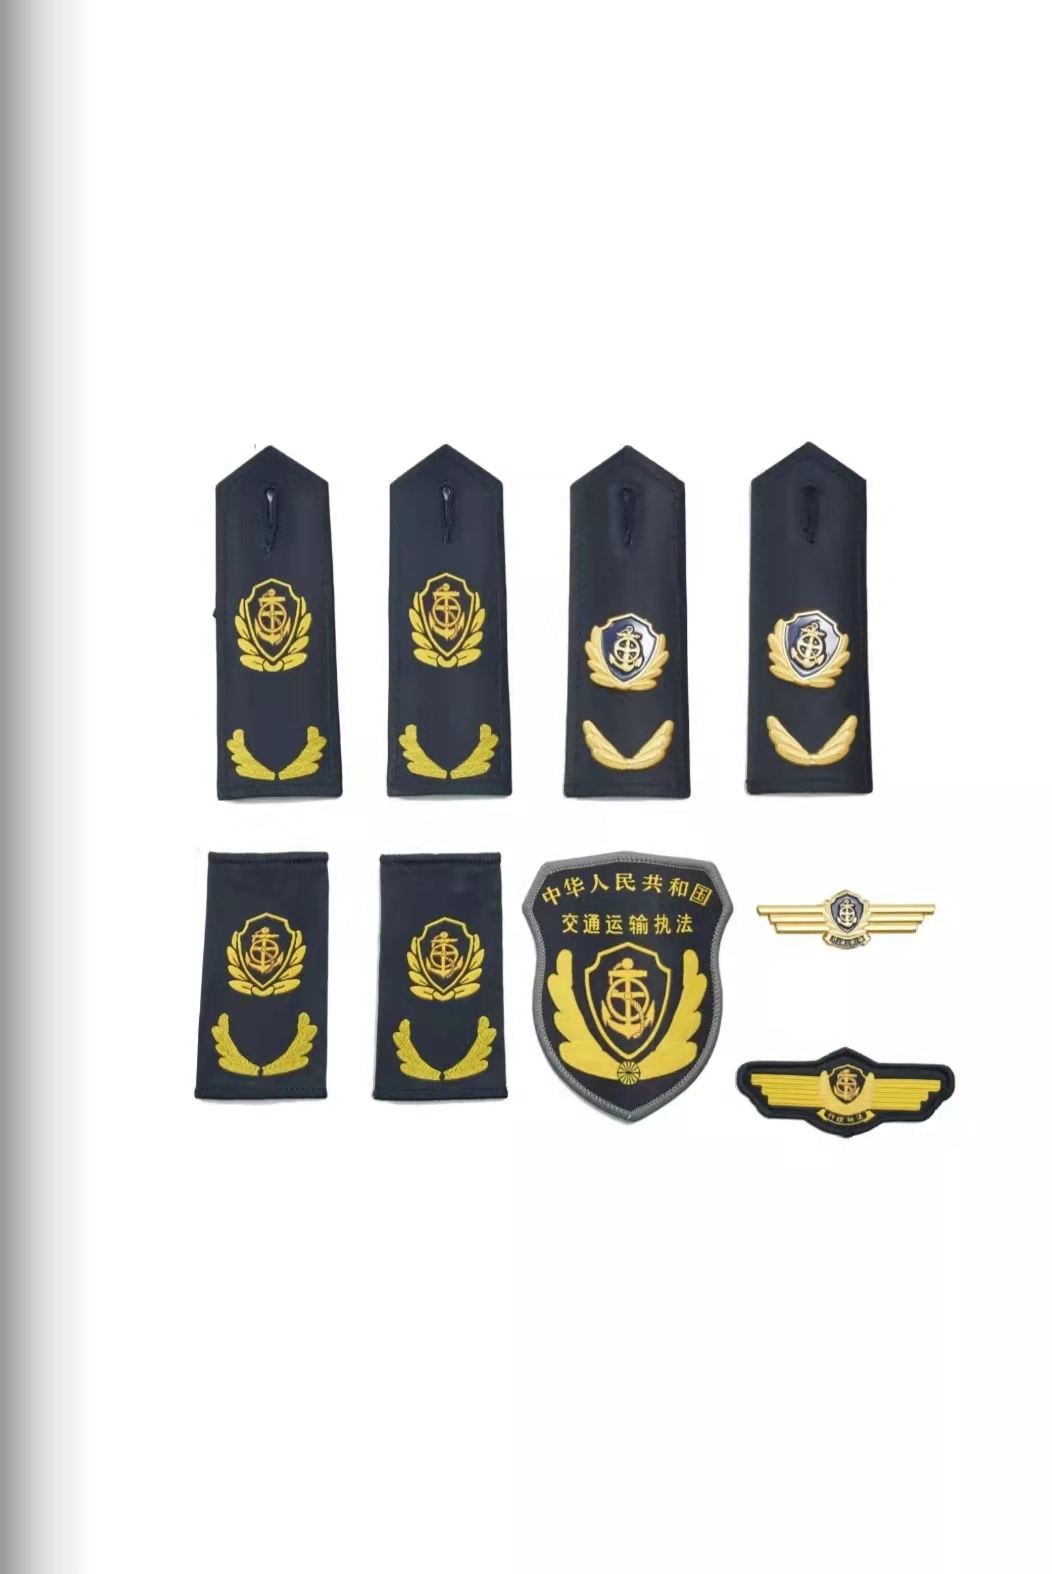 双鸭山六部门统一交通运输执法服装标志